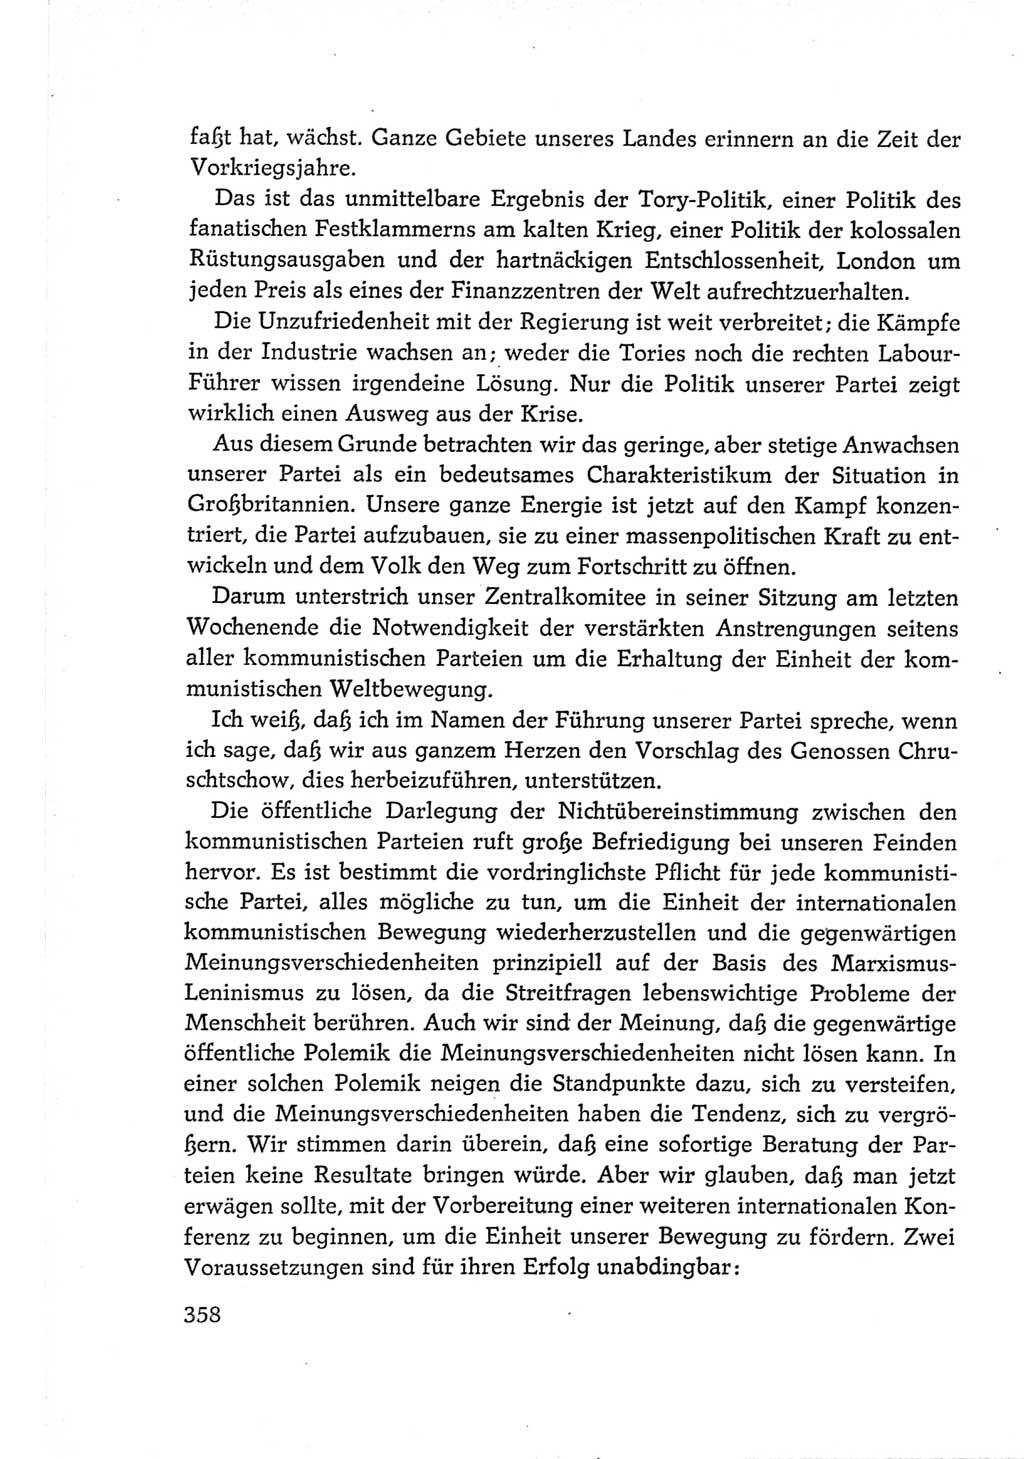 Protokoll der Verhandlungen des Ⅵ. Parteitages der Sozialistischen Einheitspartei Deutschlands (SED) [Deutsche Demokratische Republik (DDR)] 1963, Band Ⅱ, Seite 358 (Prot. Verh. Ⅵ. PT SED DDR 1963, Bd. Ⅱ, S. 358)